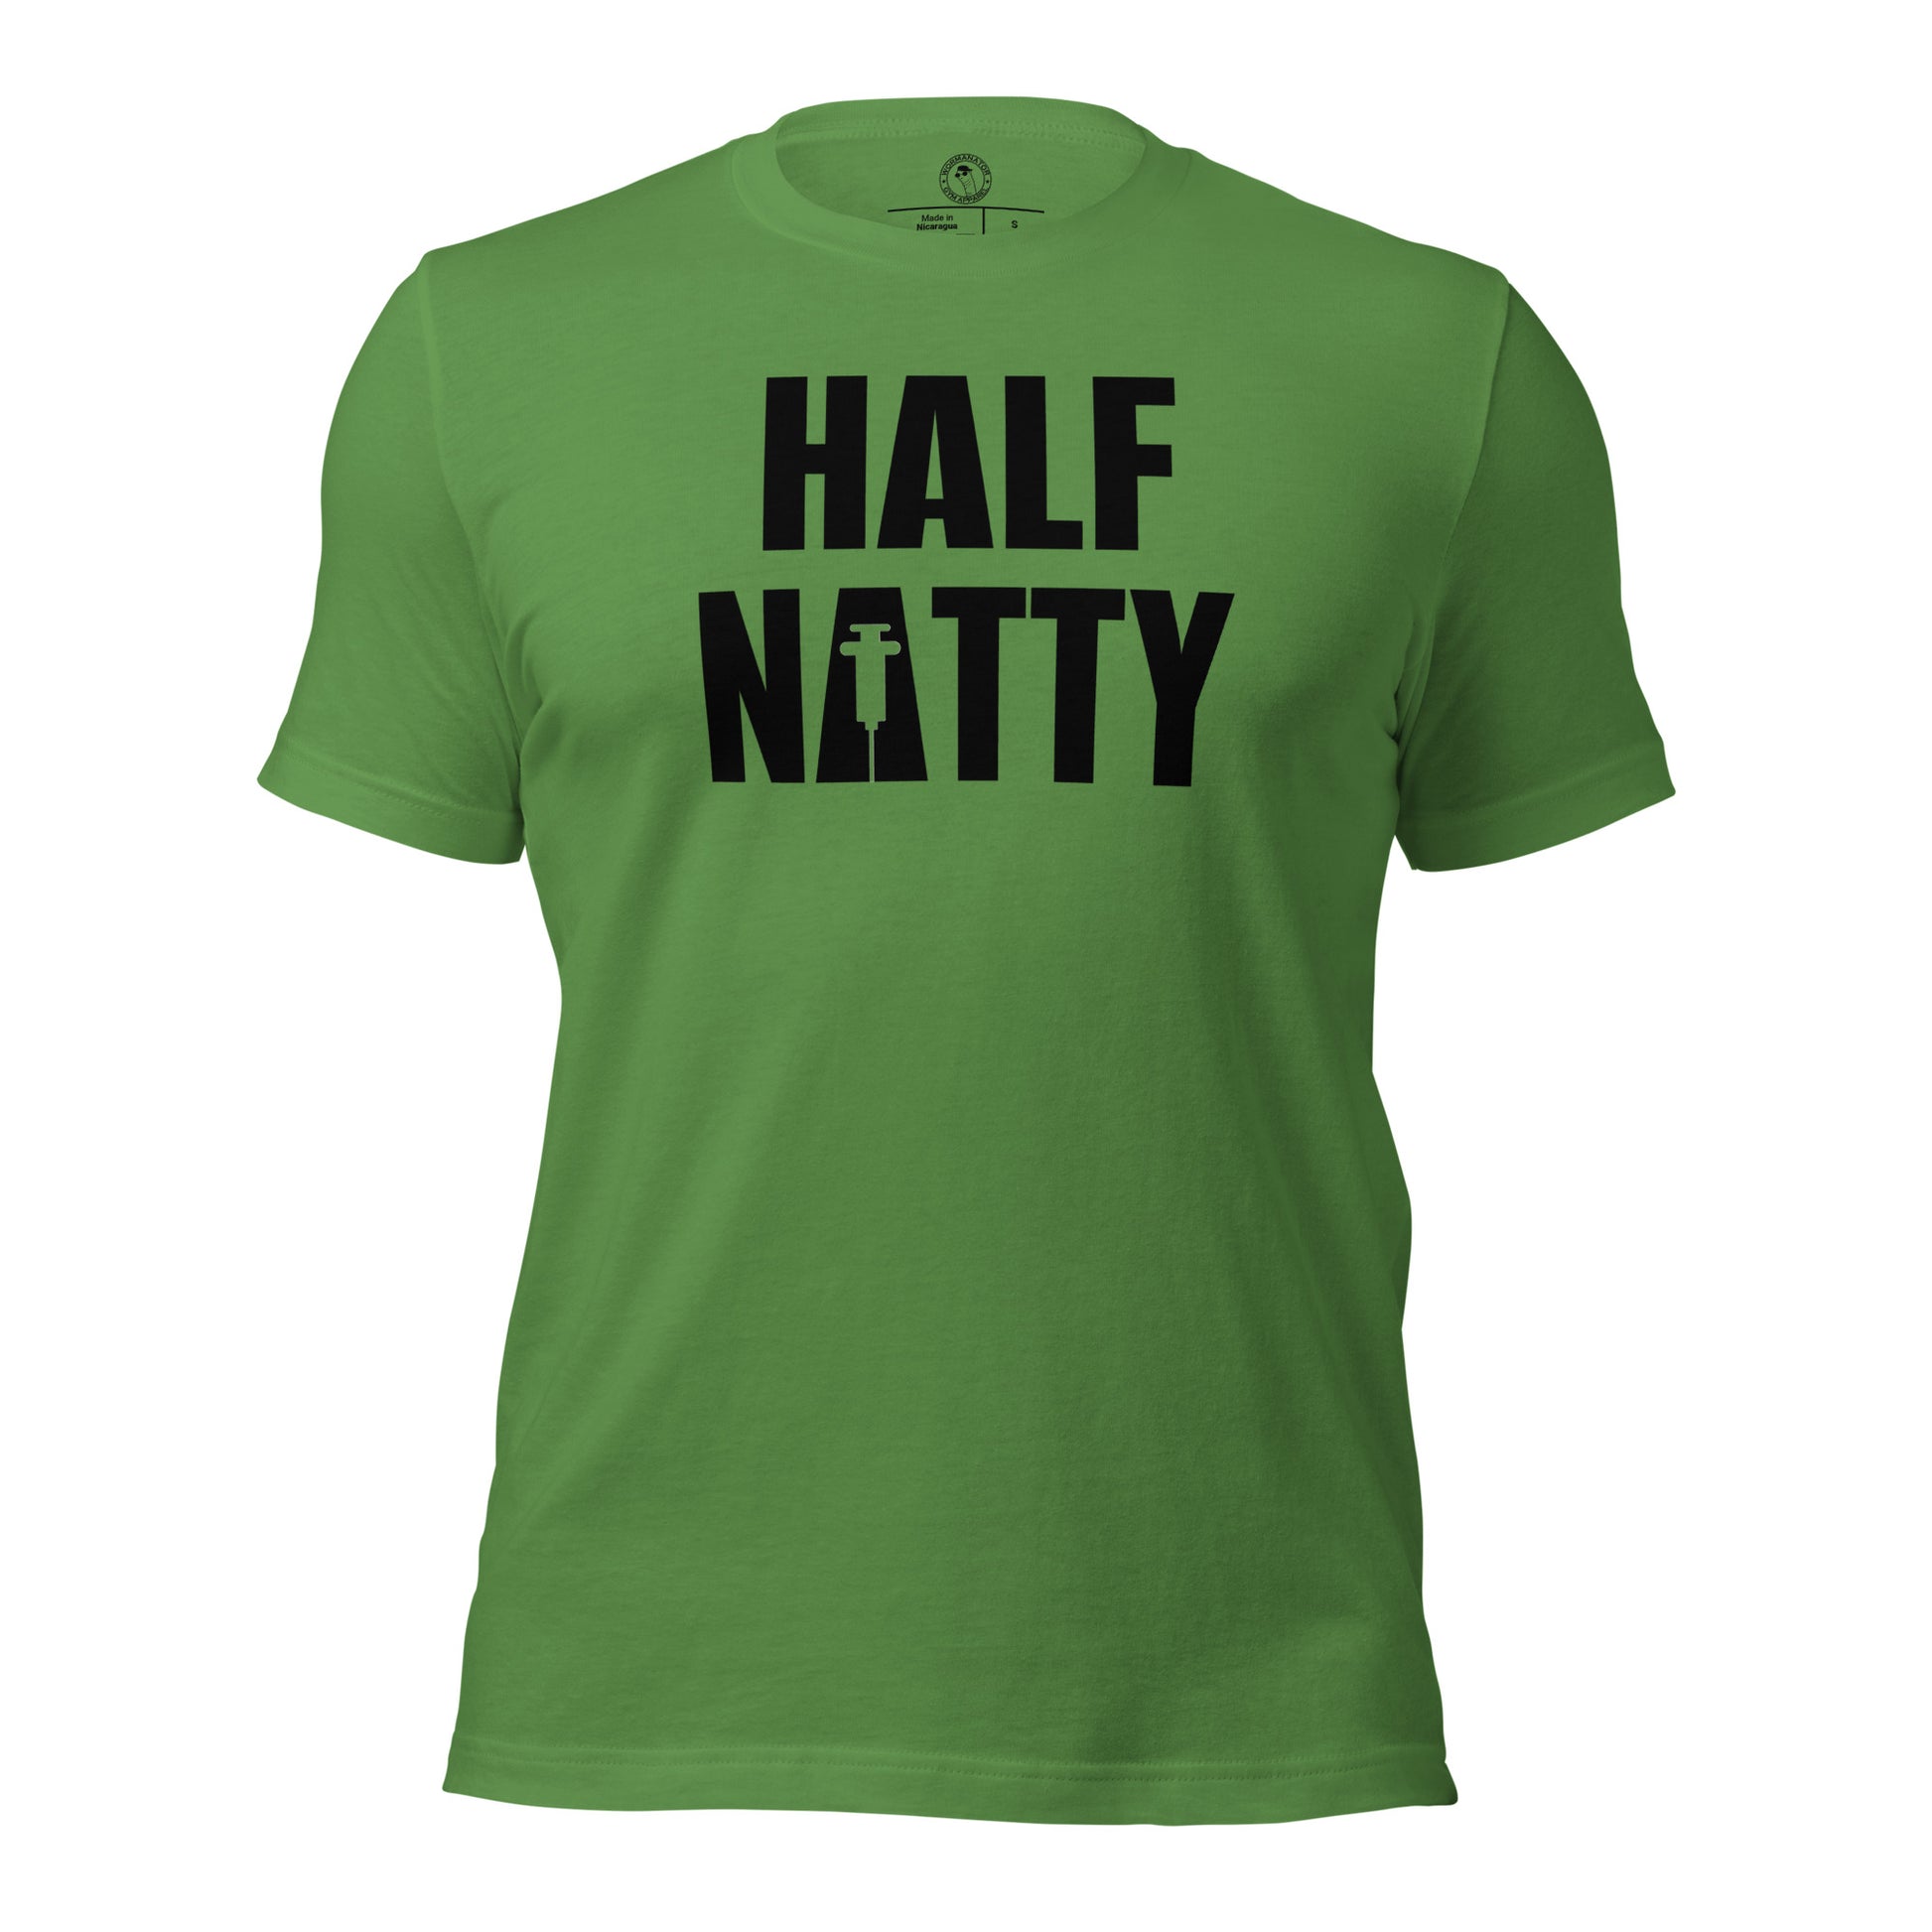 Half Natty T-Shirt in Leaf Green